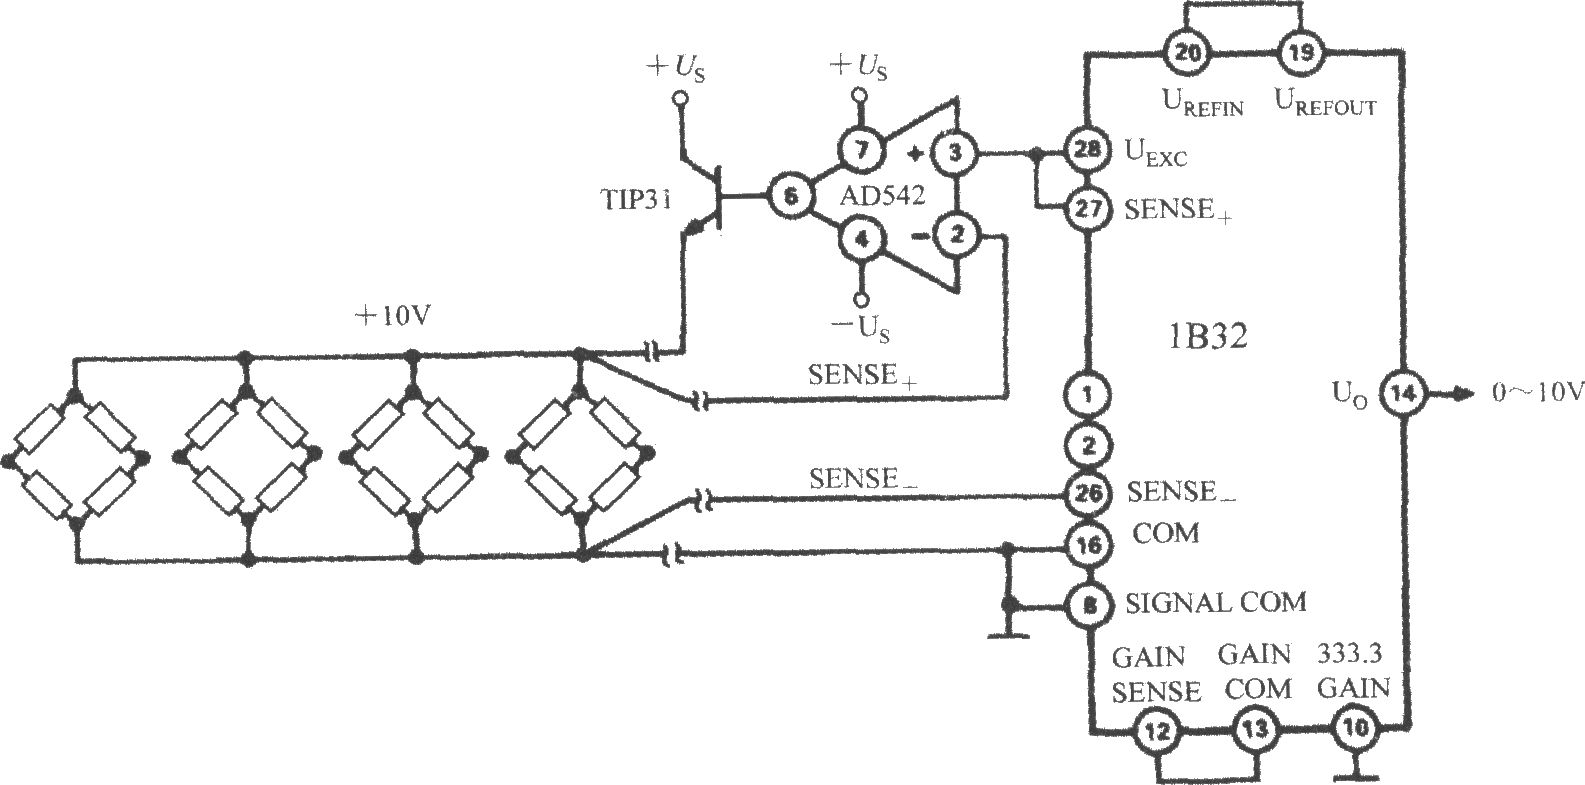 桥式传感器信号调理器1B32配多路压力传感器时的应用电路